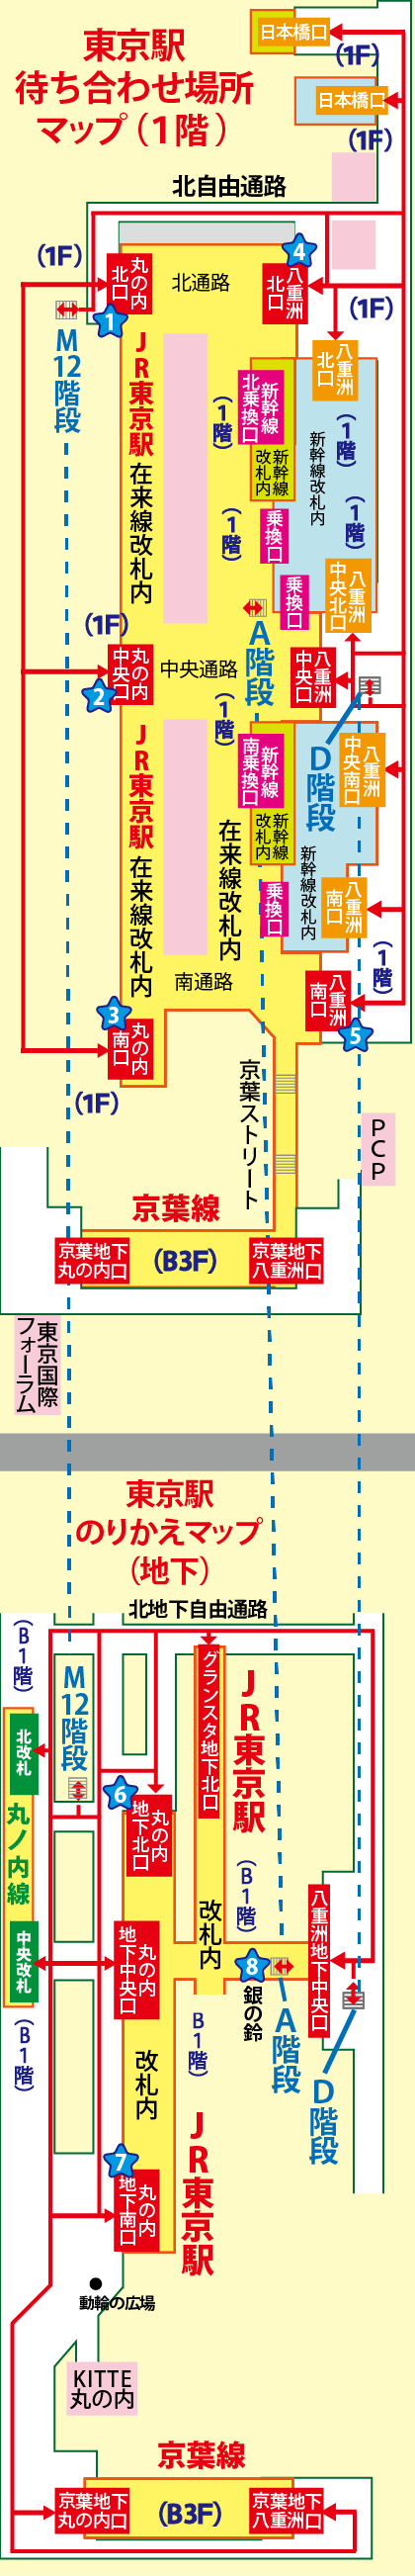 東京駅の待ち合わせ場所マップ